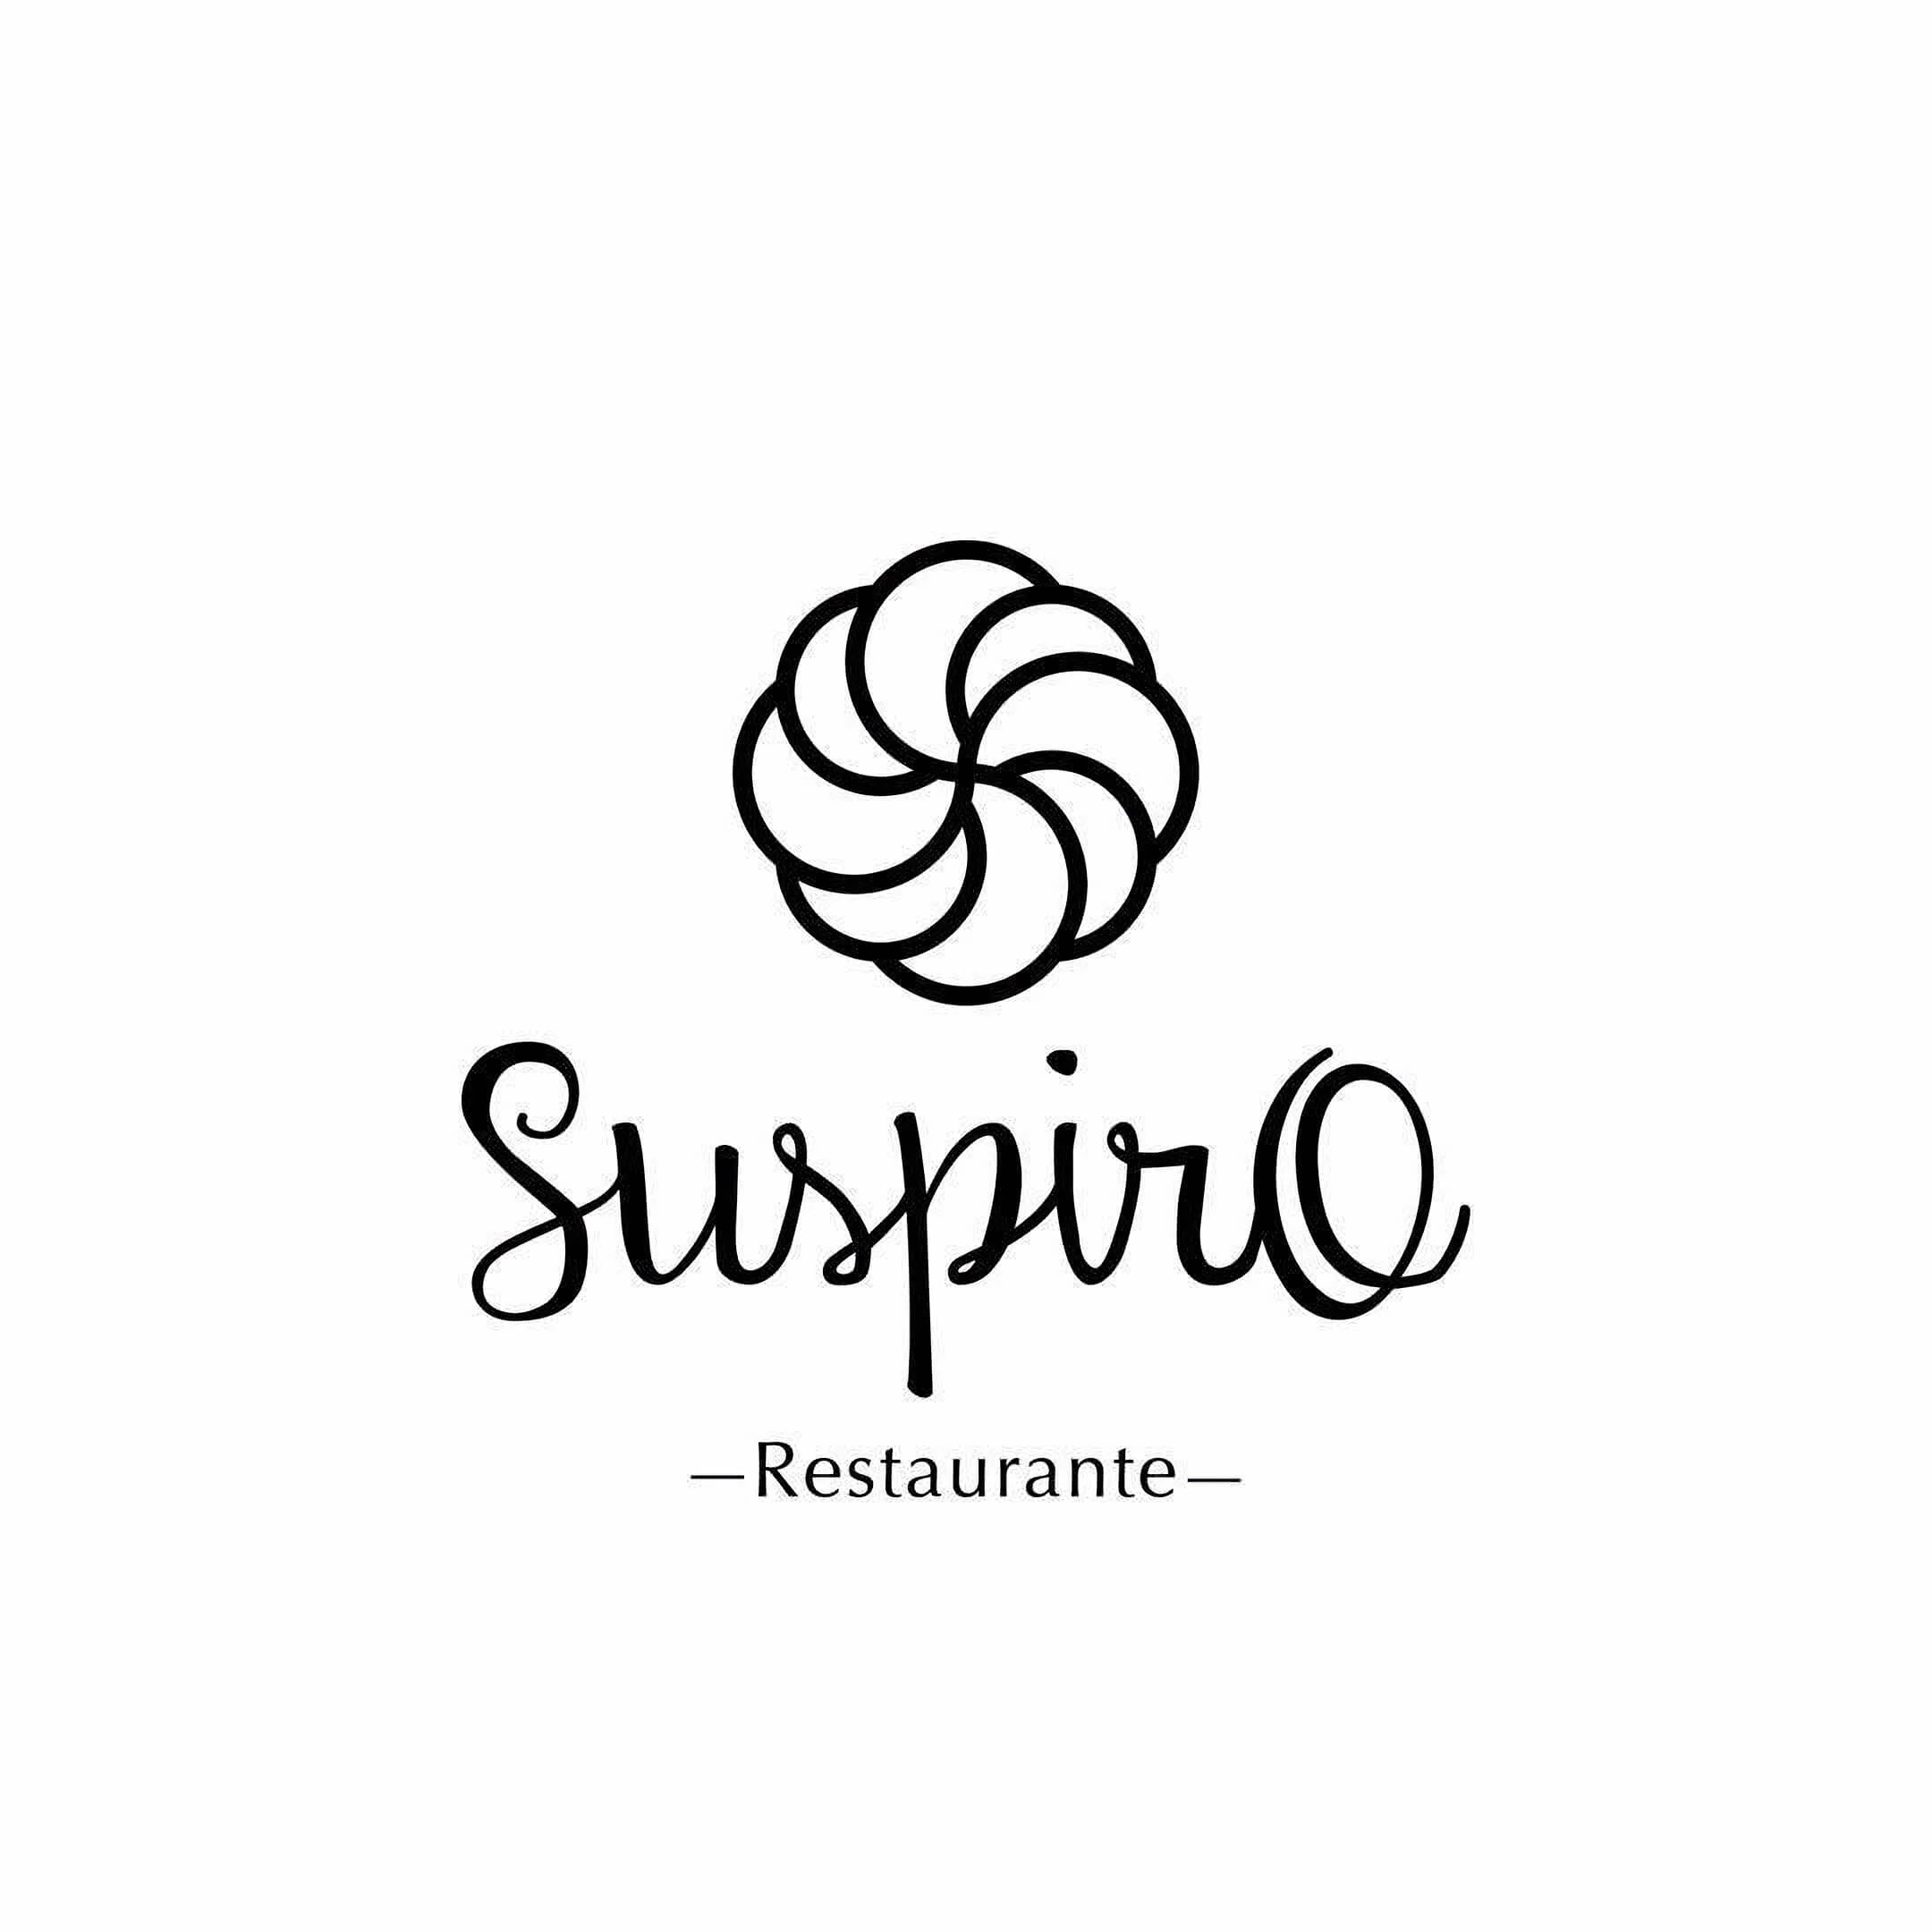 Suspiro Restaurante-7440